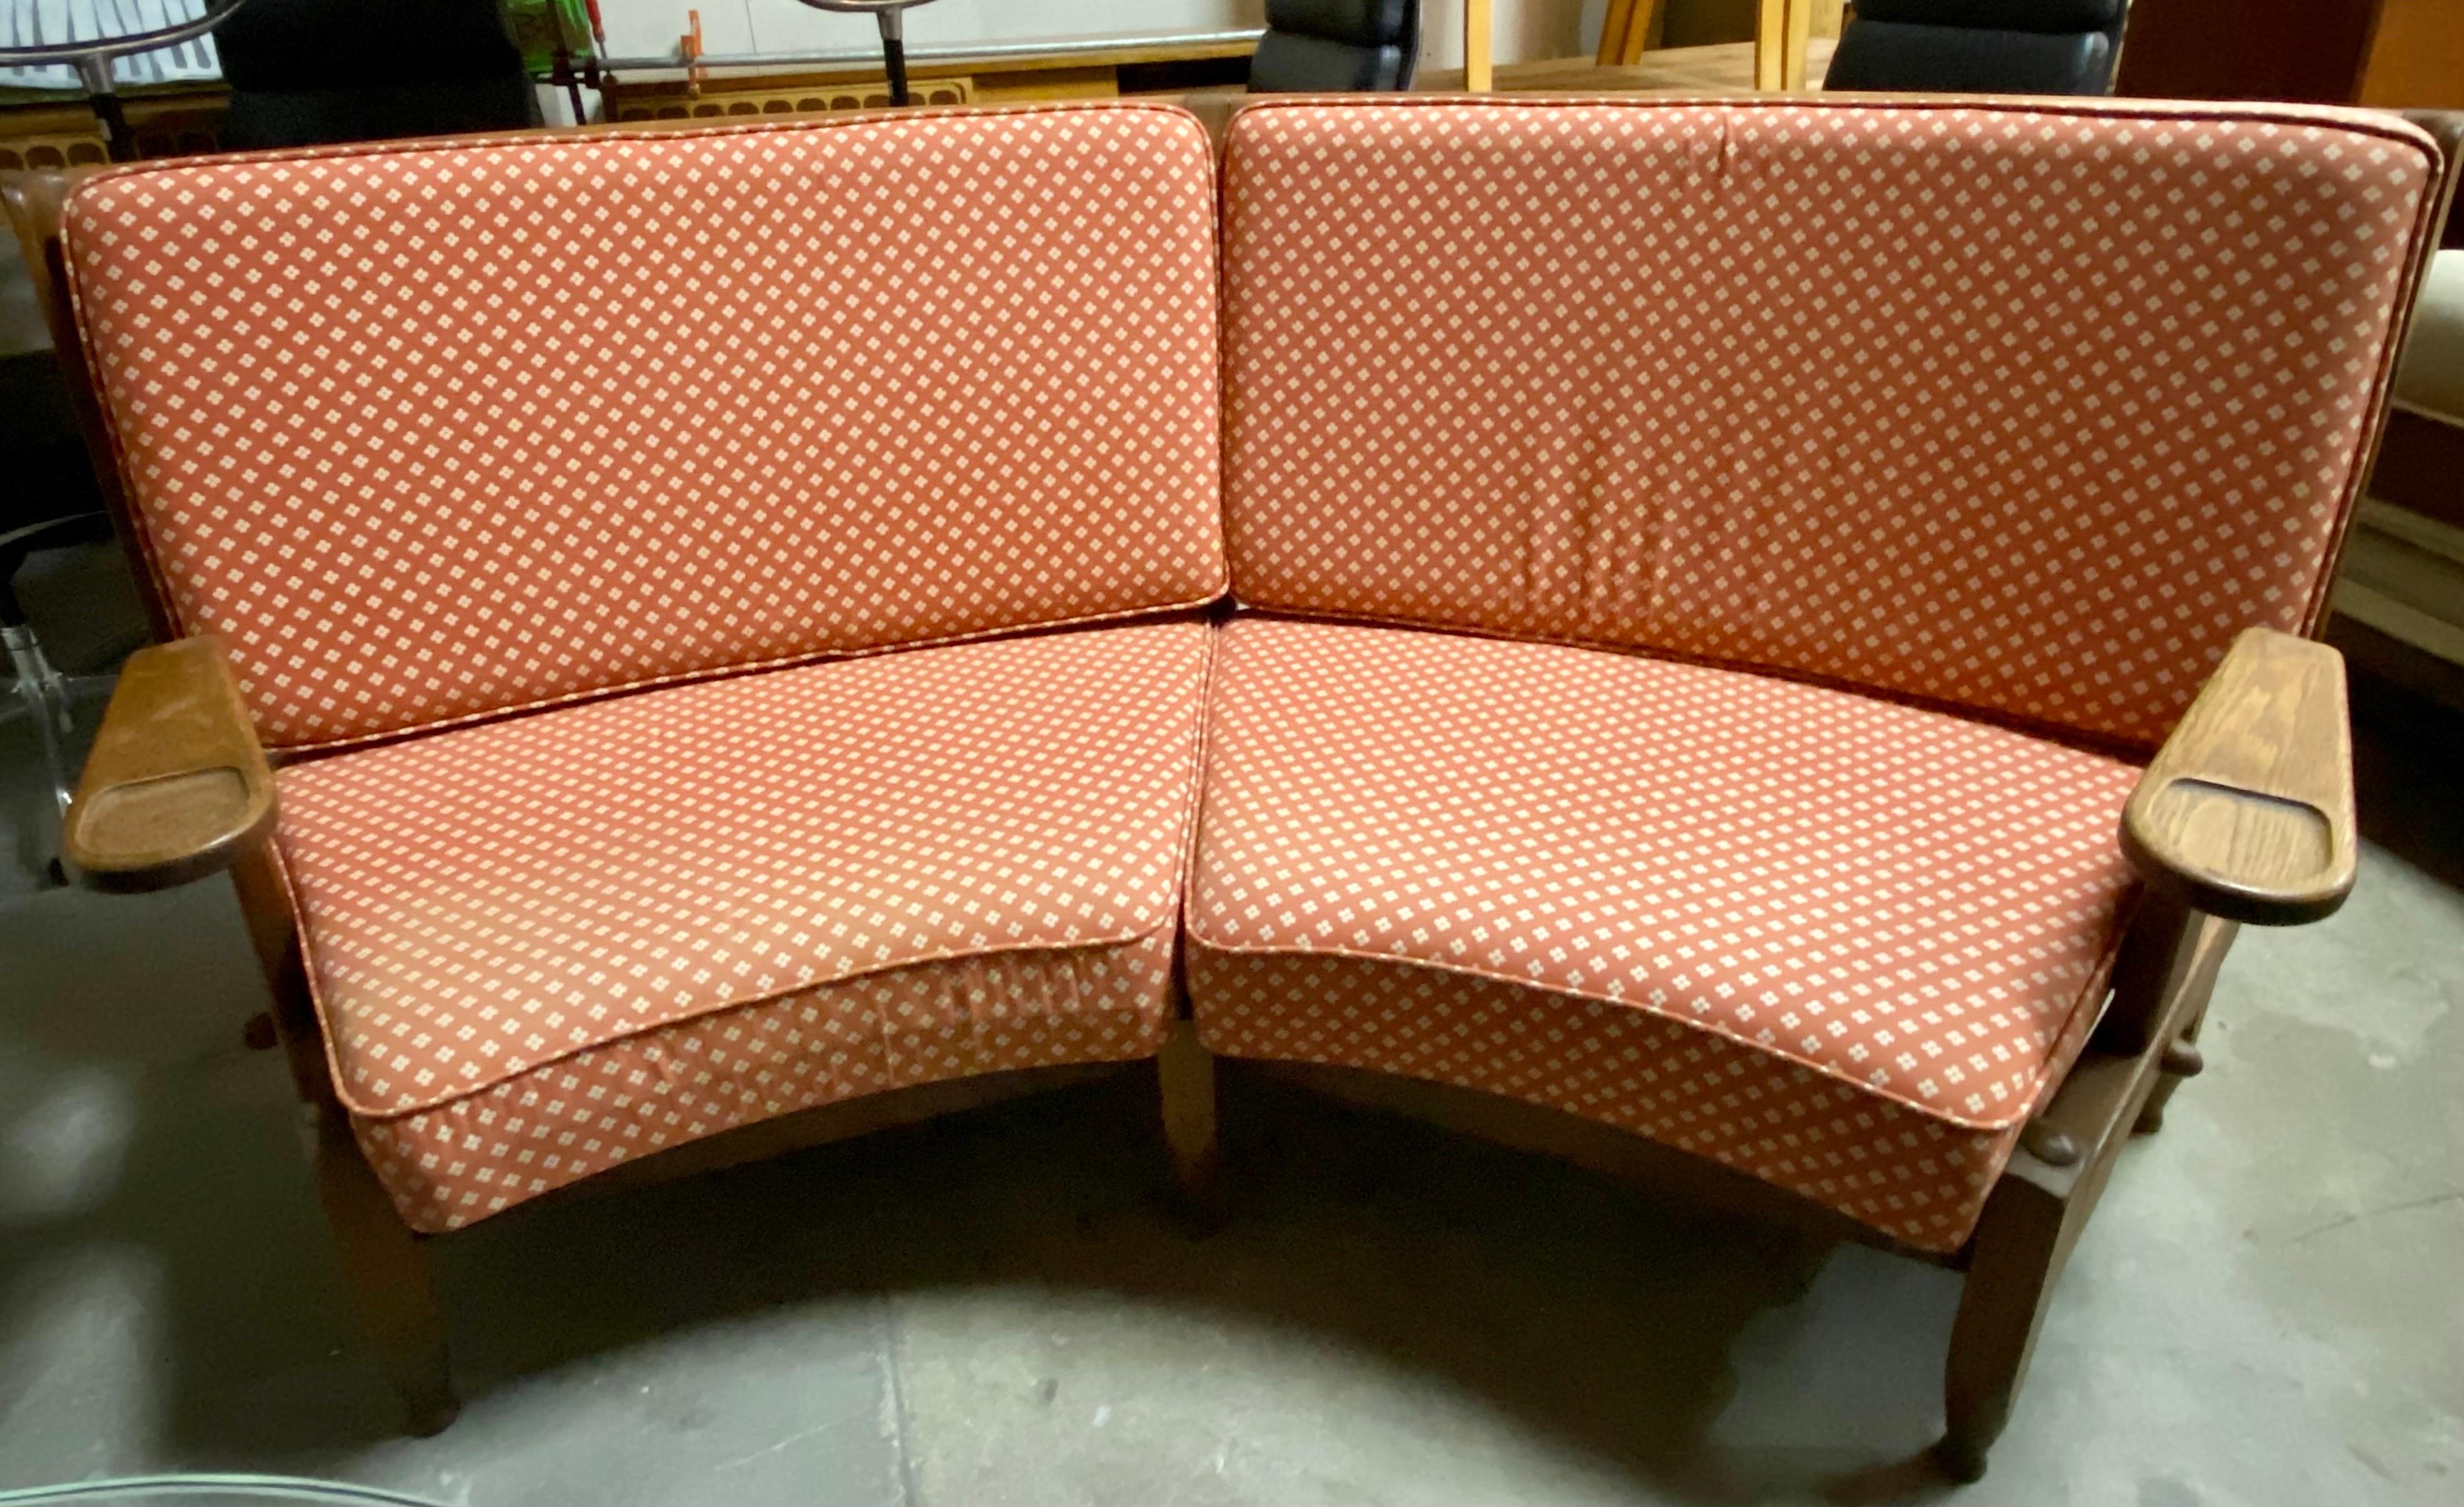 Sofa von Guillerme et Chambron aus massiver Eiche mit Stoffbezug, um 1950, Frankreich. Dieses französische Vintage-Sofa hat eine geschwungene Rückenlehne mit einzigartigen Holzdetails. Leichte Verblassung auf der linken unteren Seite des Stoffes.